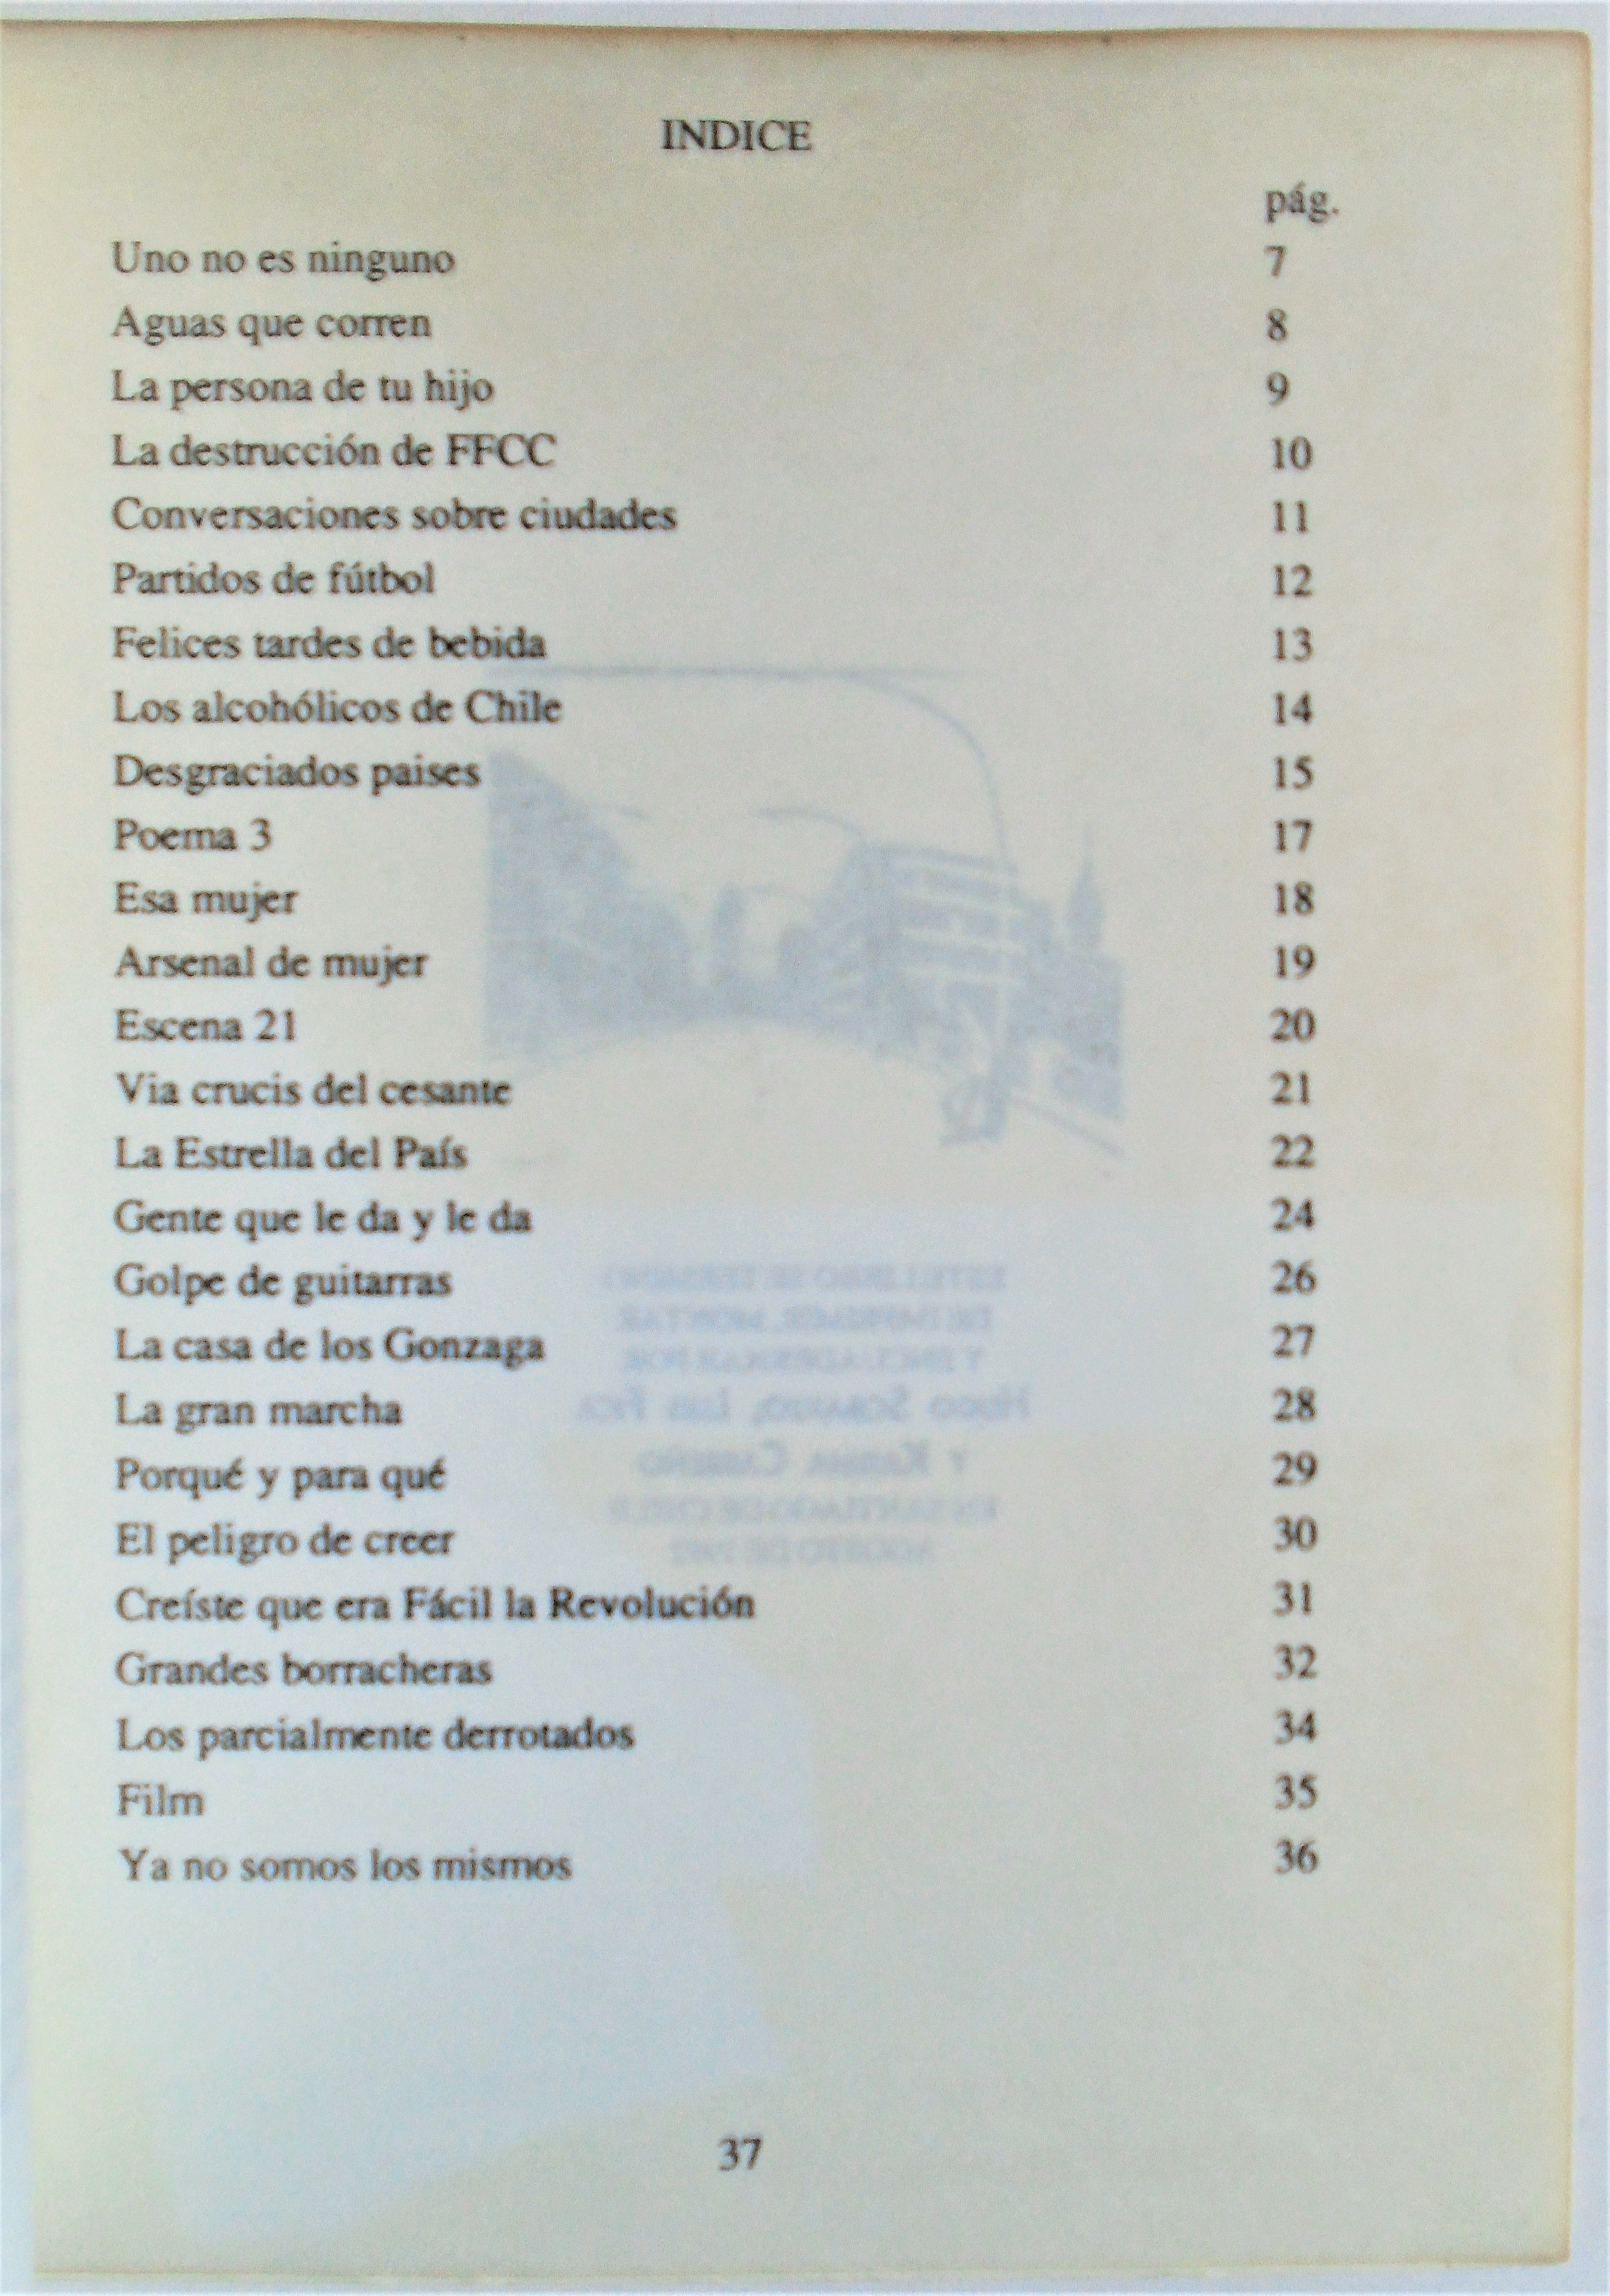 Treinta poemas del ex poeta José Ángel Cuevas